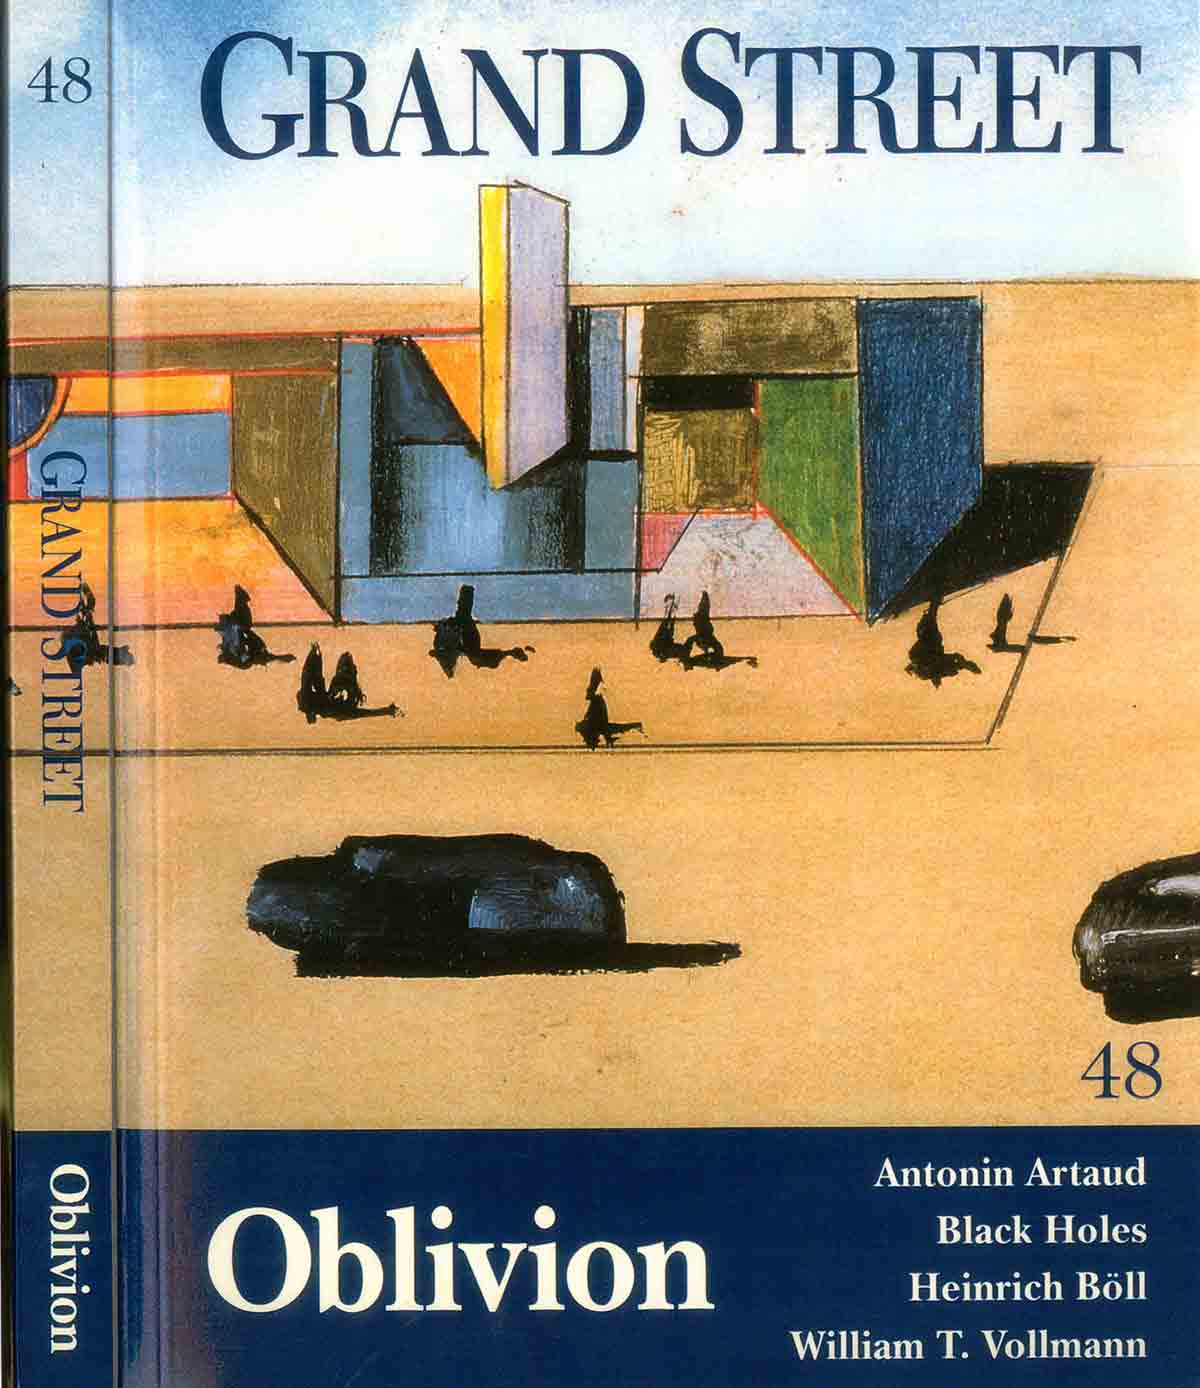 Steinberg’s cover for Grand Street, Winter 1994. 